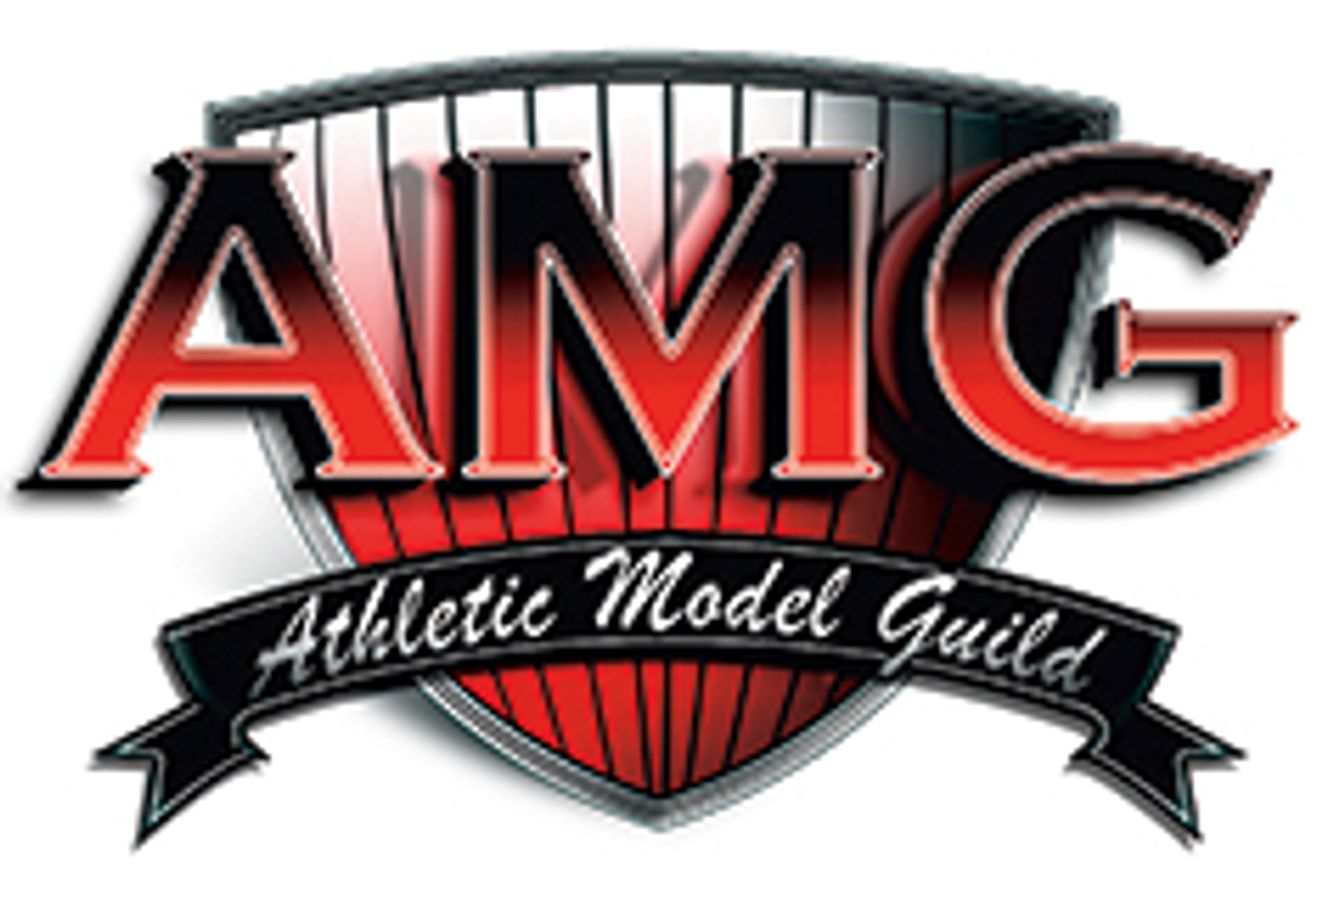 Athletic Model Guild